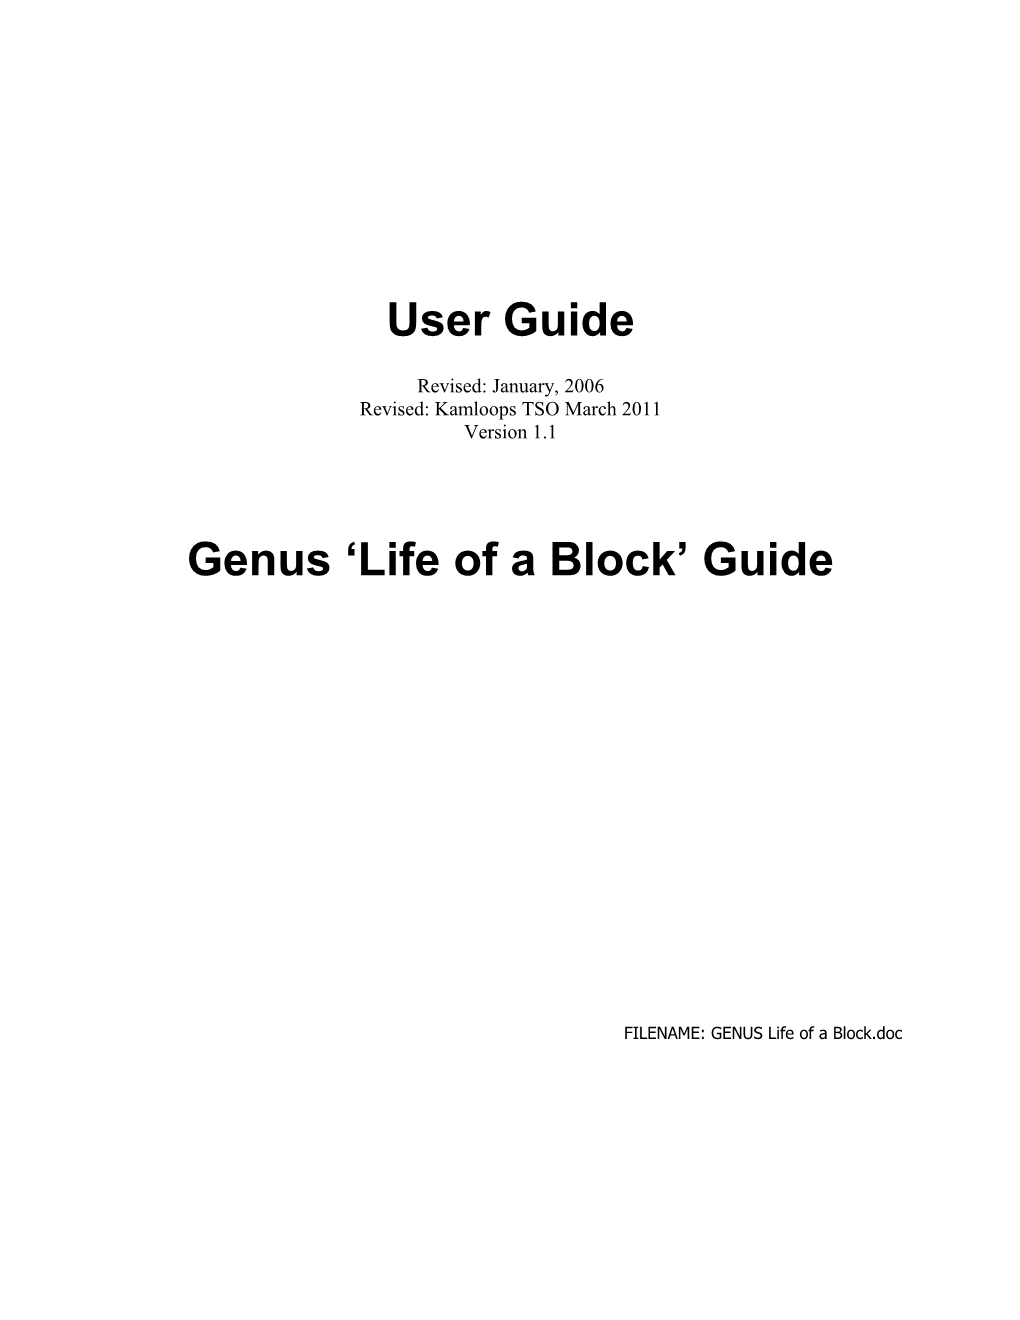 Genus Life of a Block Guide